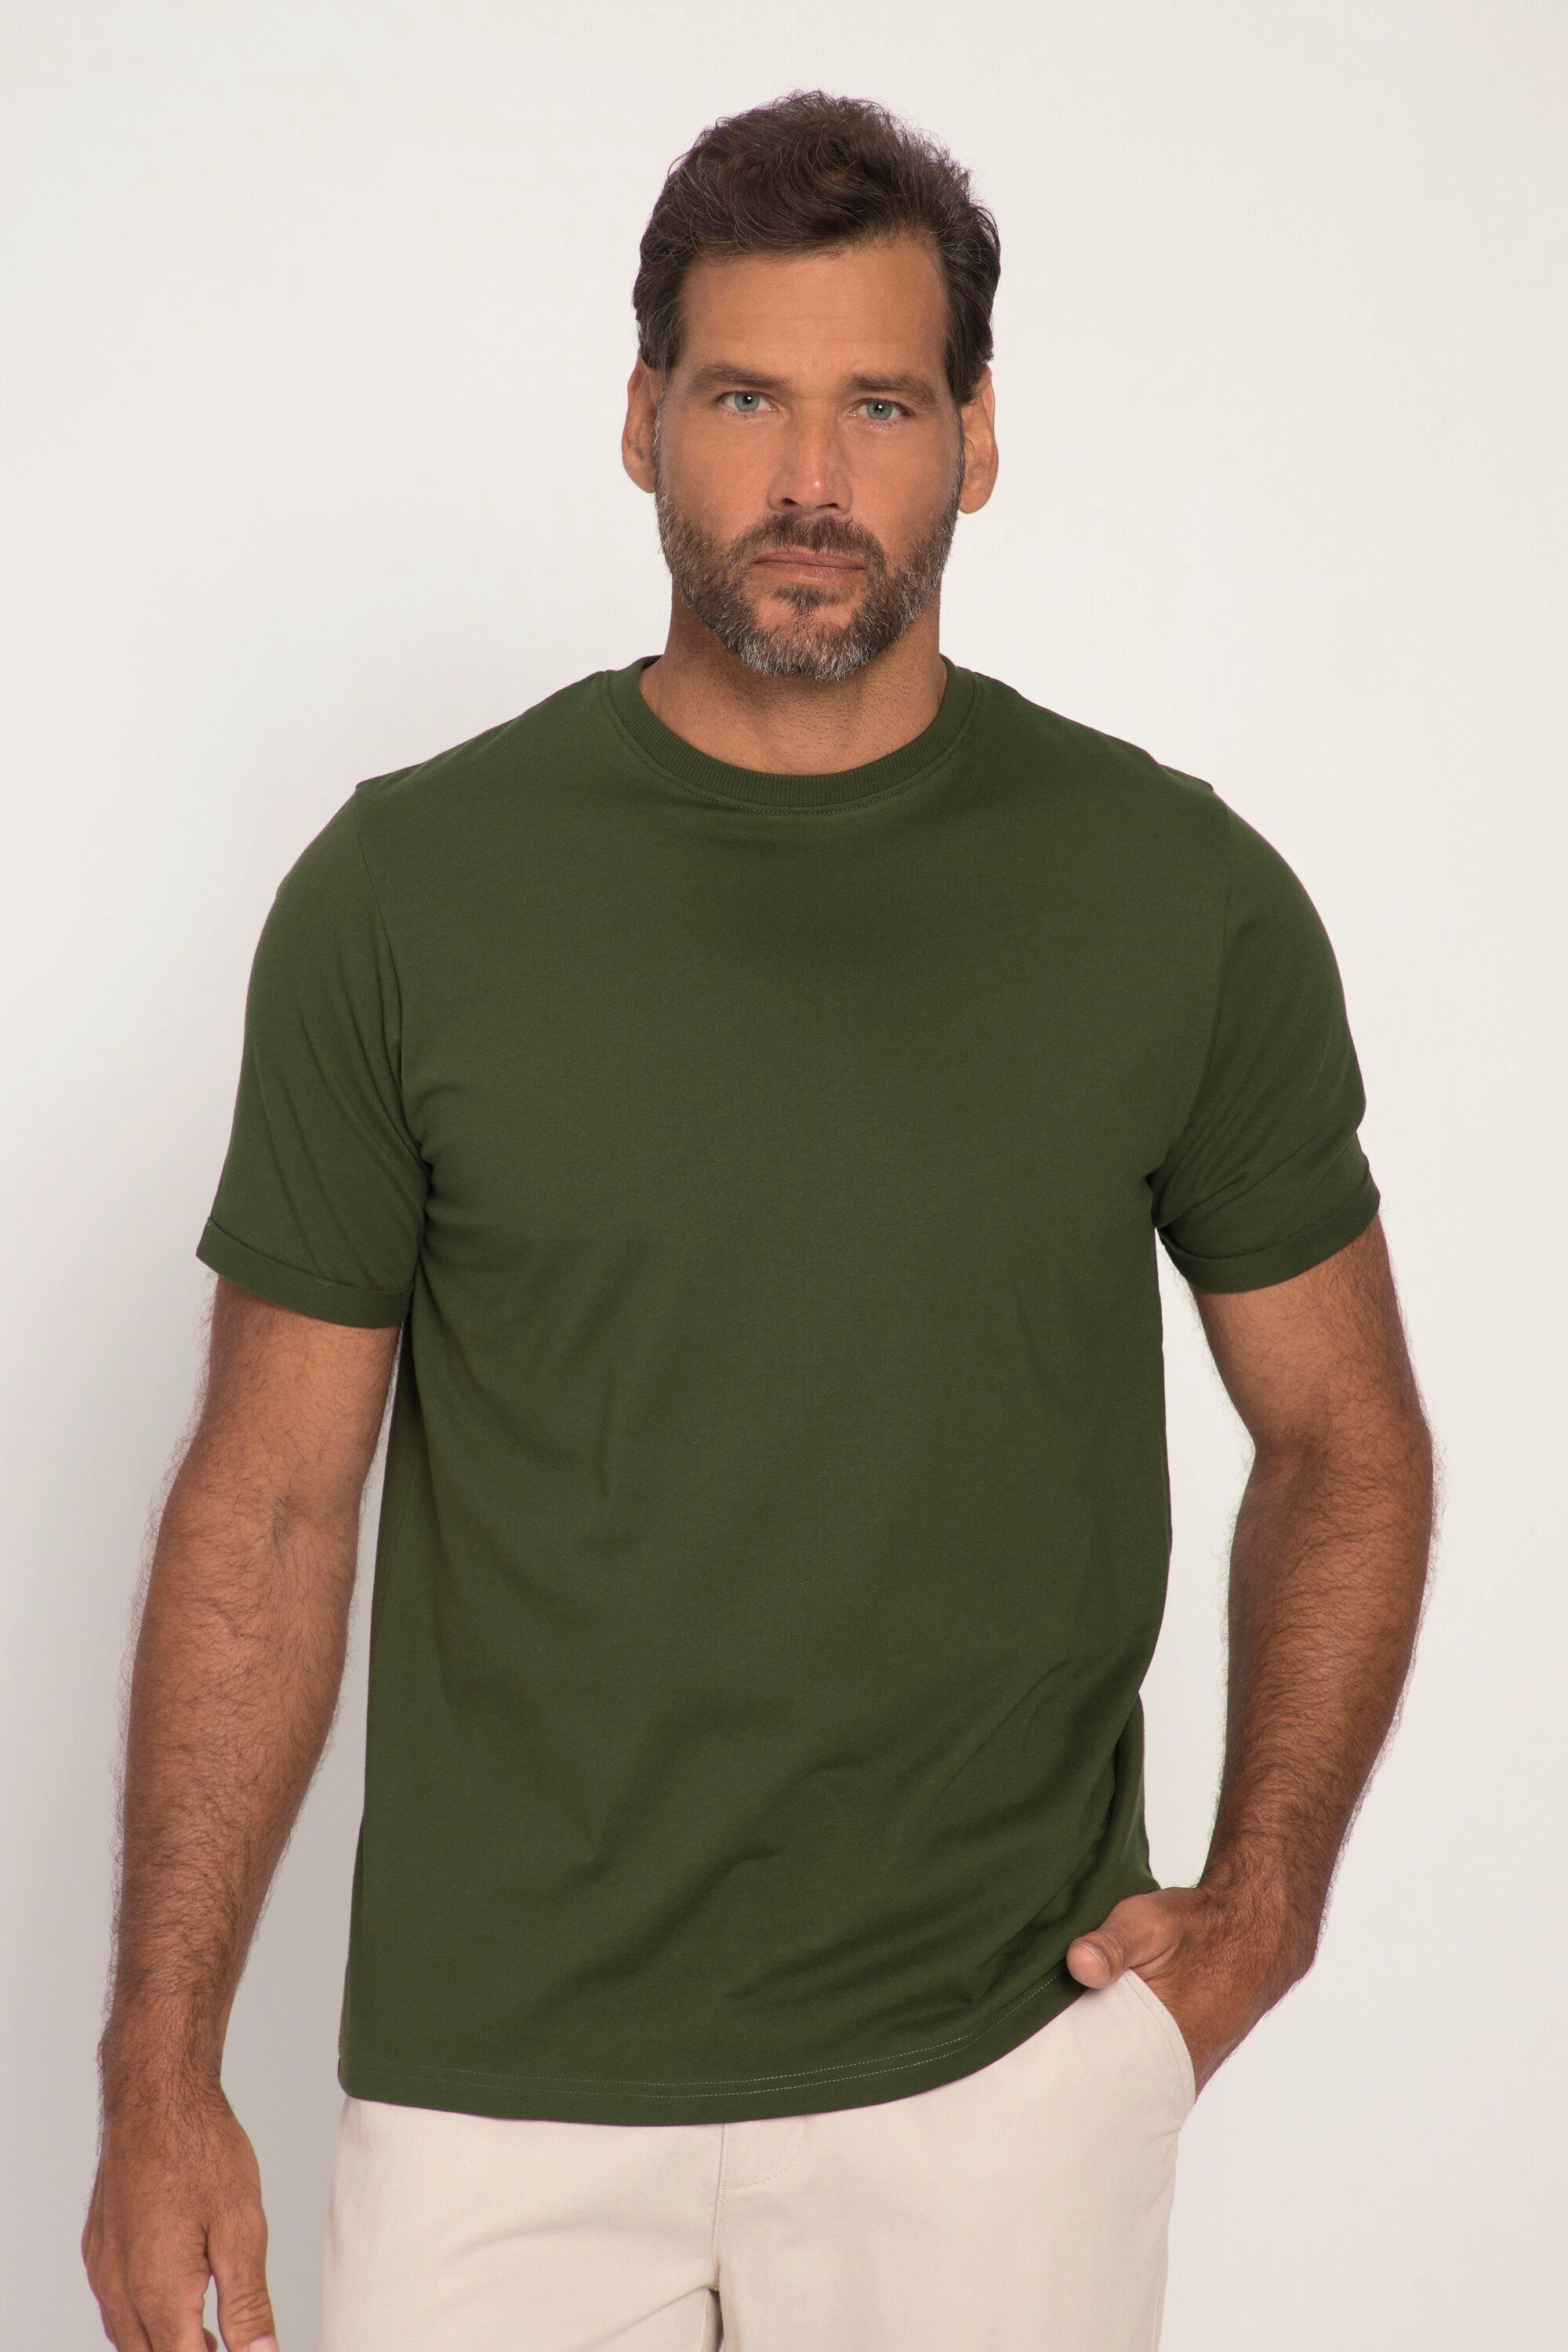 JP1880 T-Shirt T-Shirt Basic Halbarm Rundhals